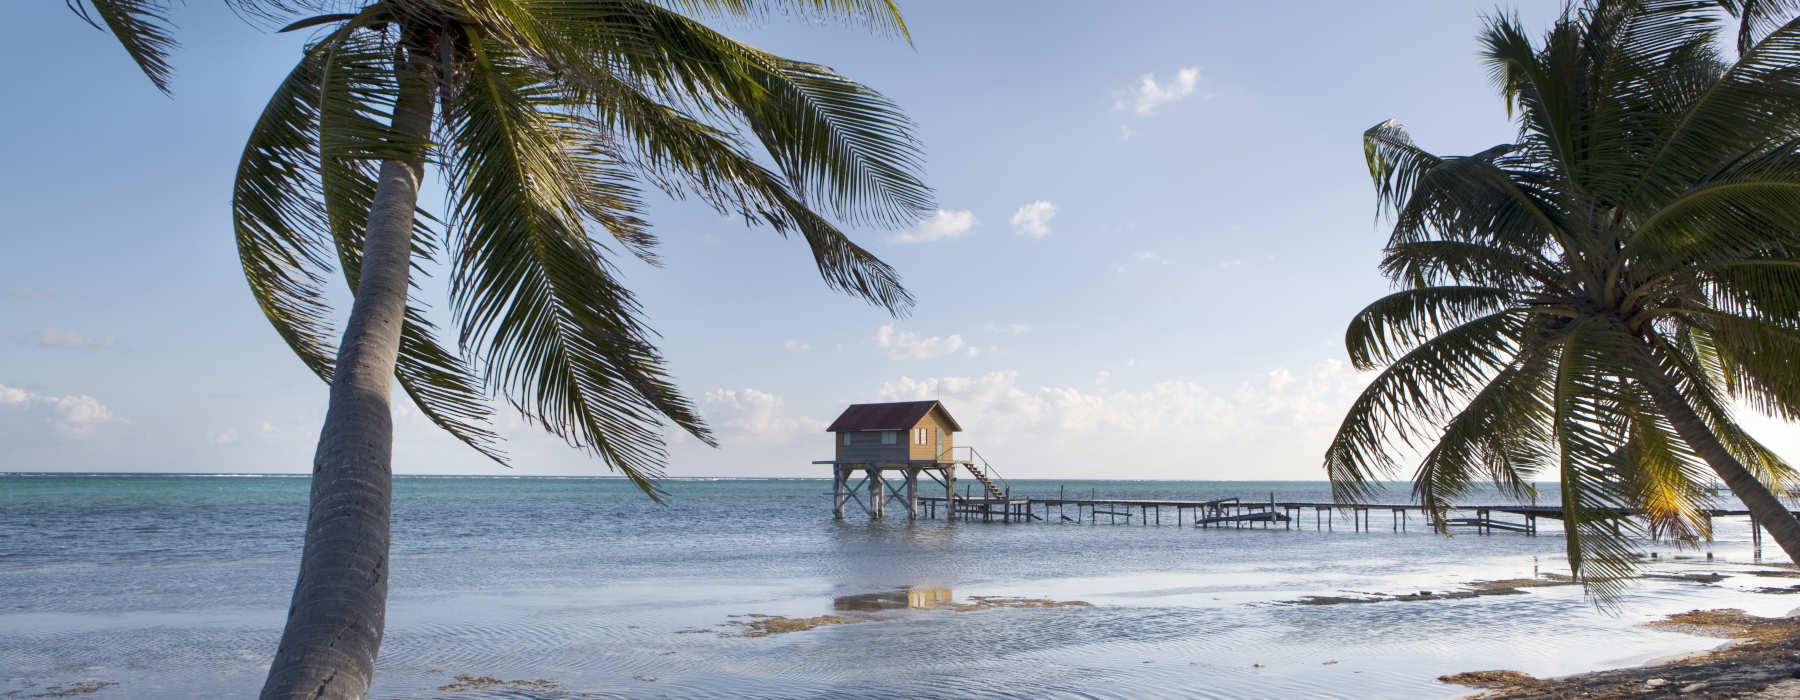 All our Belize<br class="hidden-md hidden-lg" /> Luxury Holidays